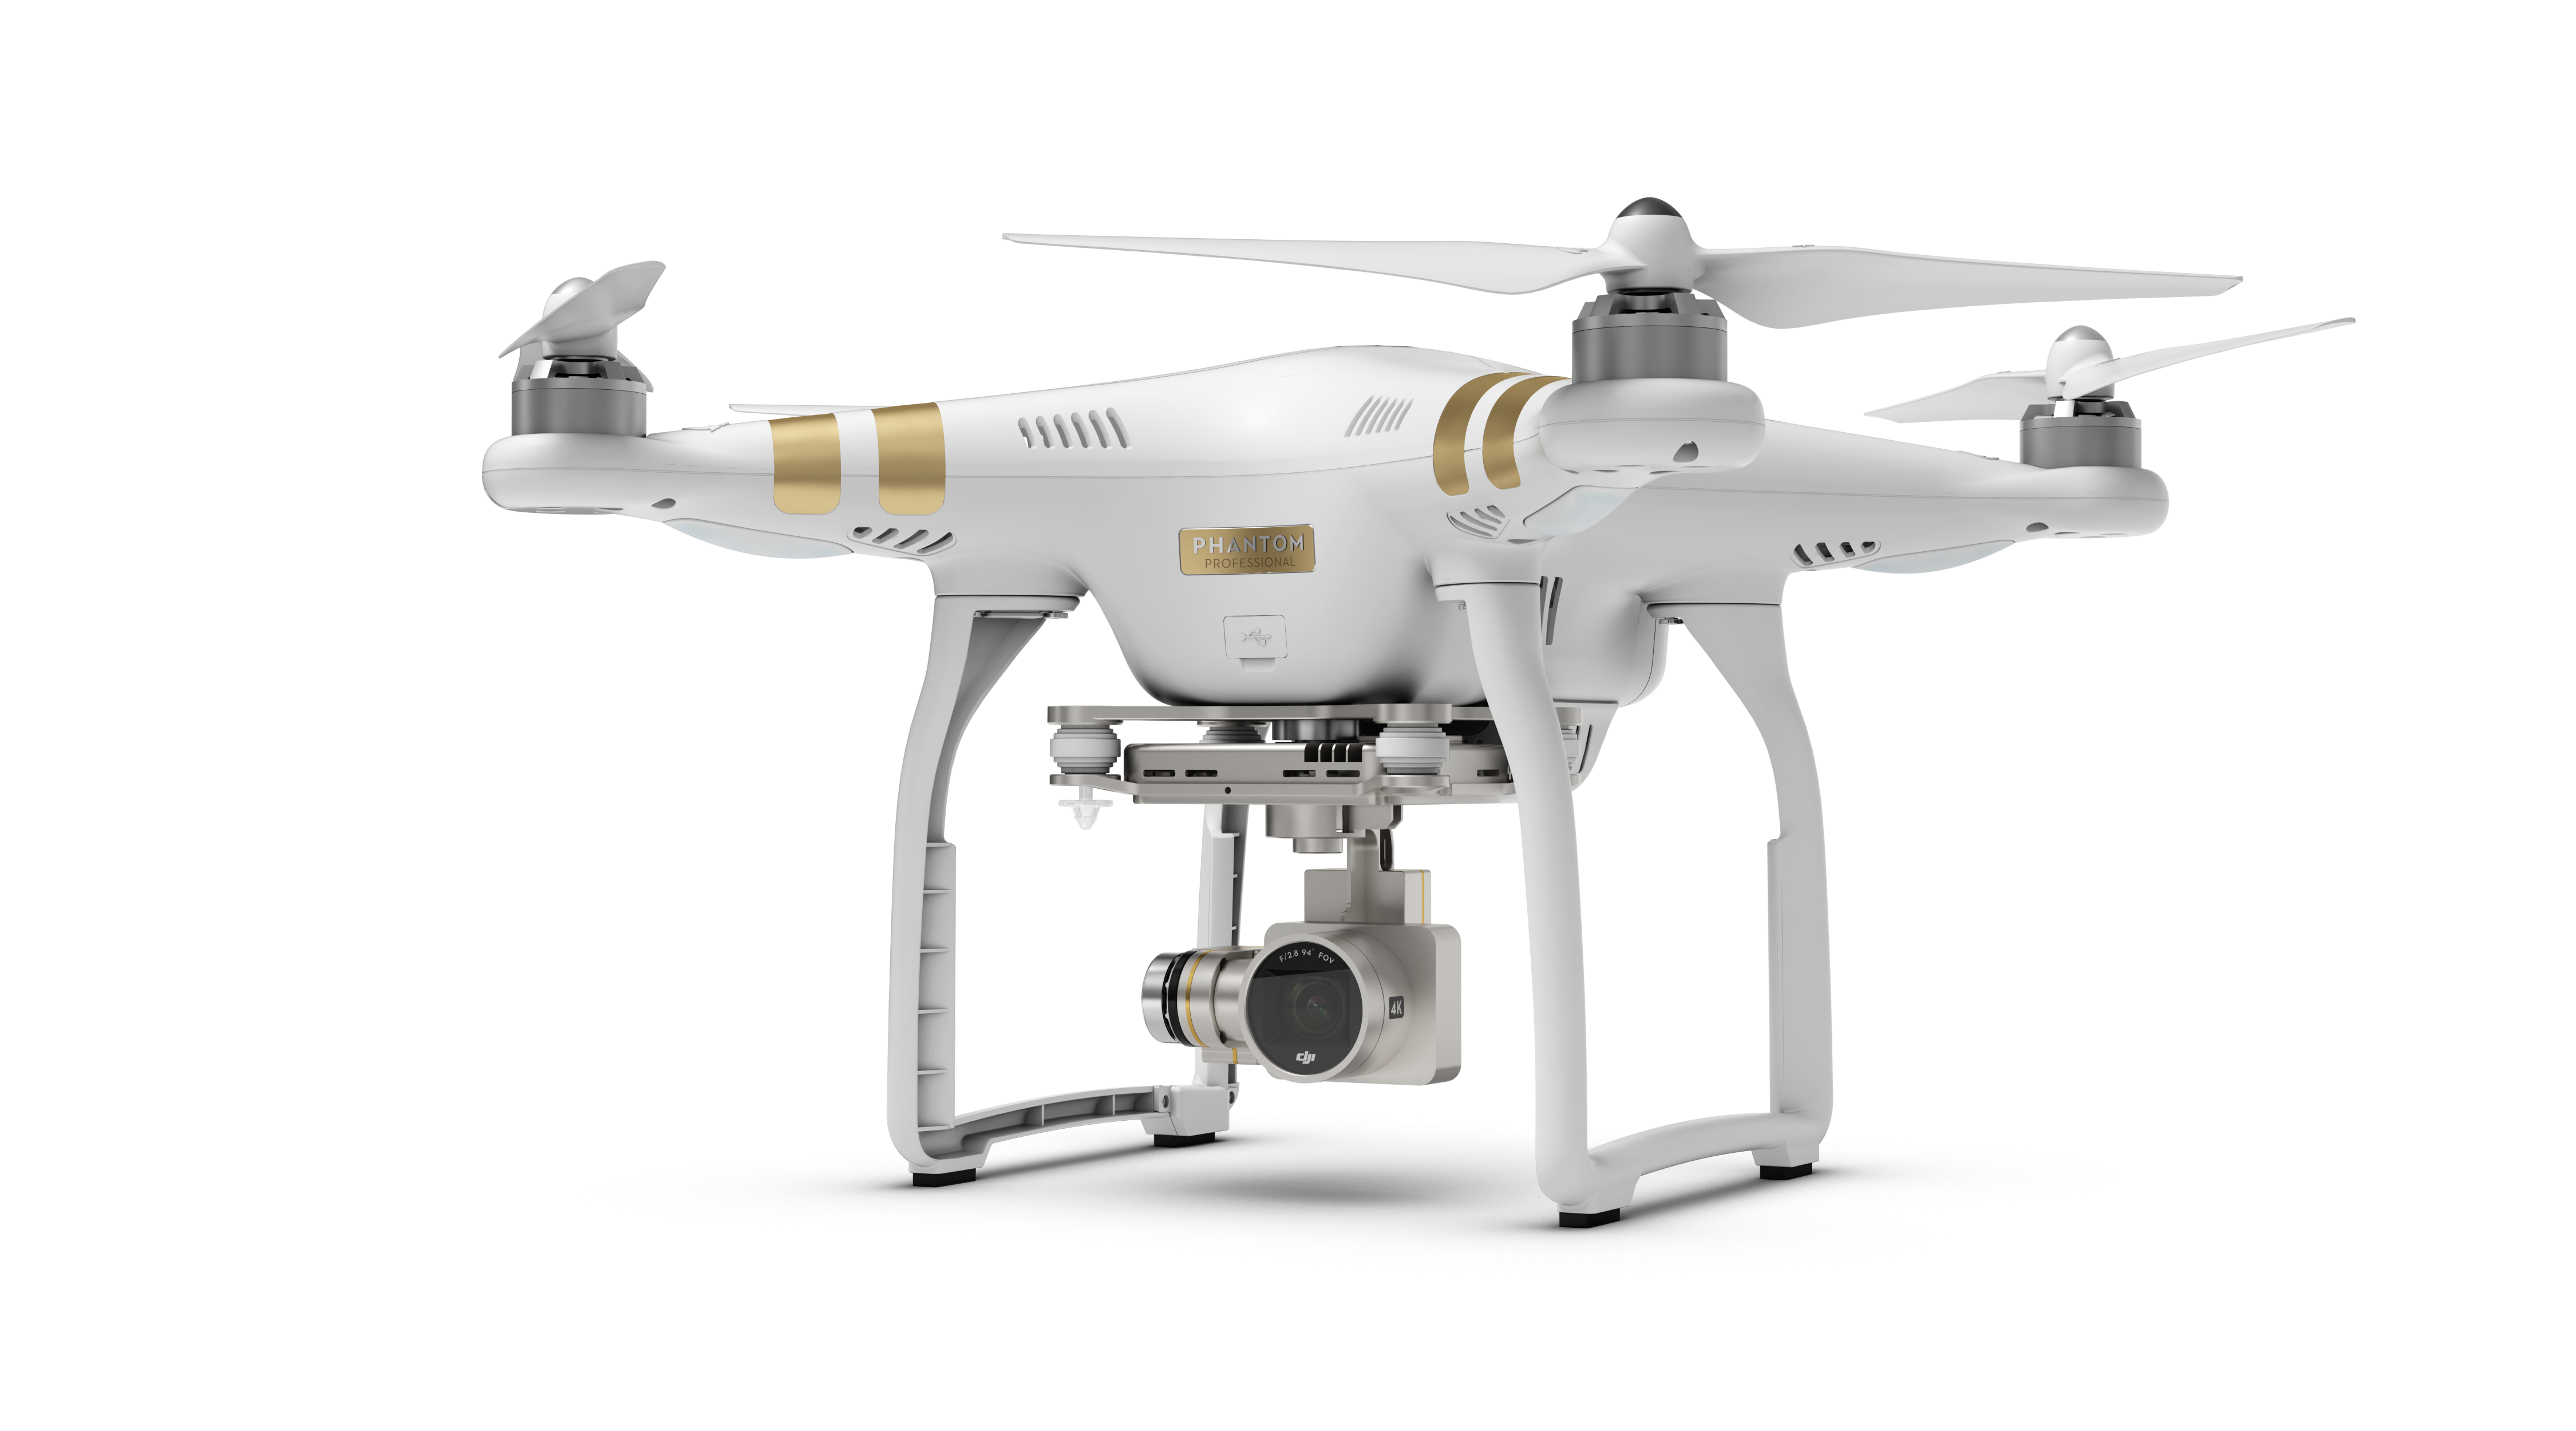 Acheter Drone télécommandé avec caméra 4K, double caméra, flux optique,  évitement d'obstacles, vol ponctuel